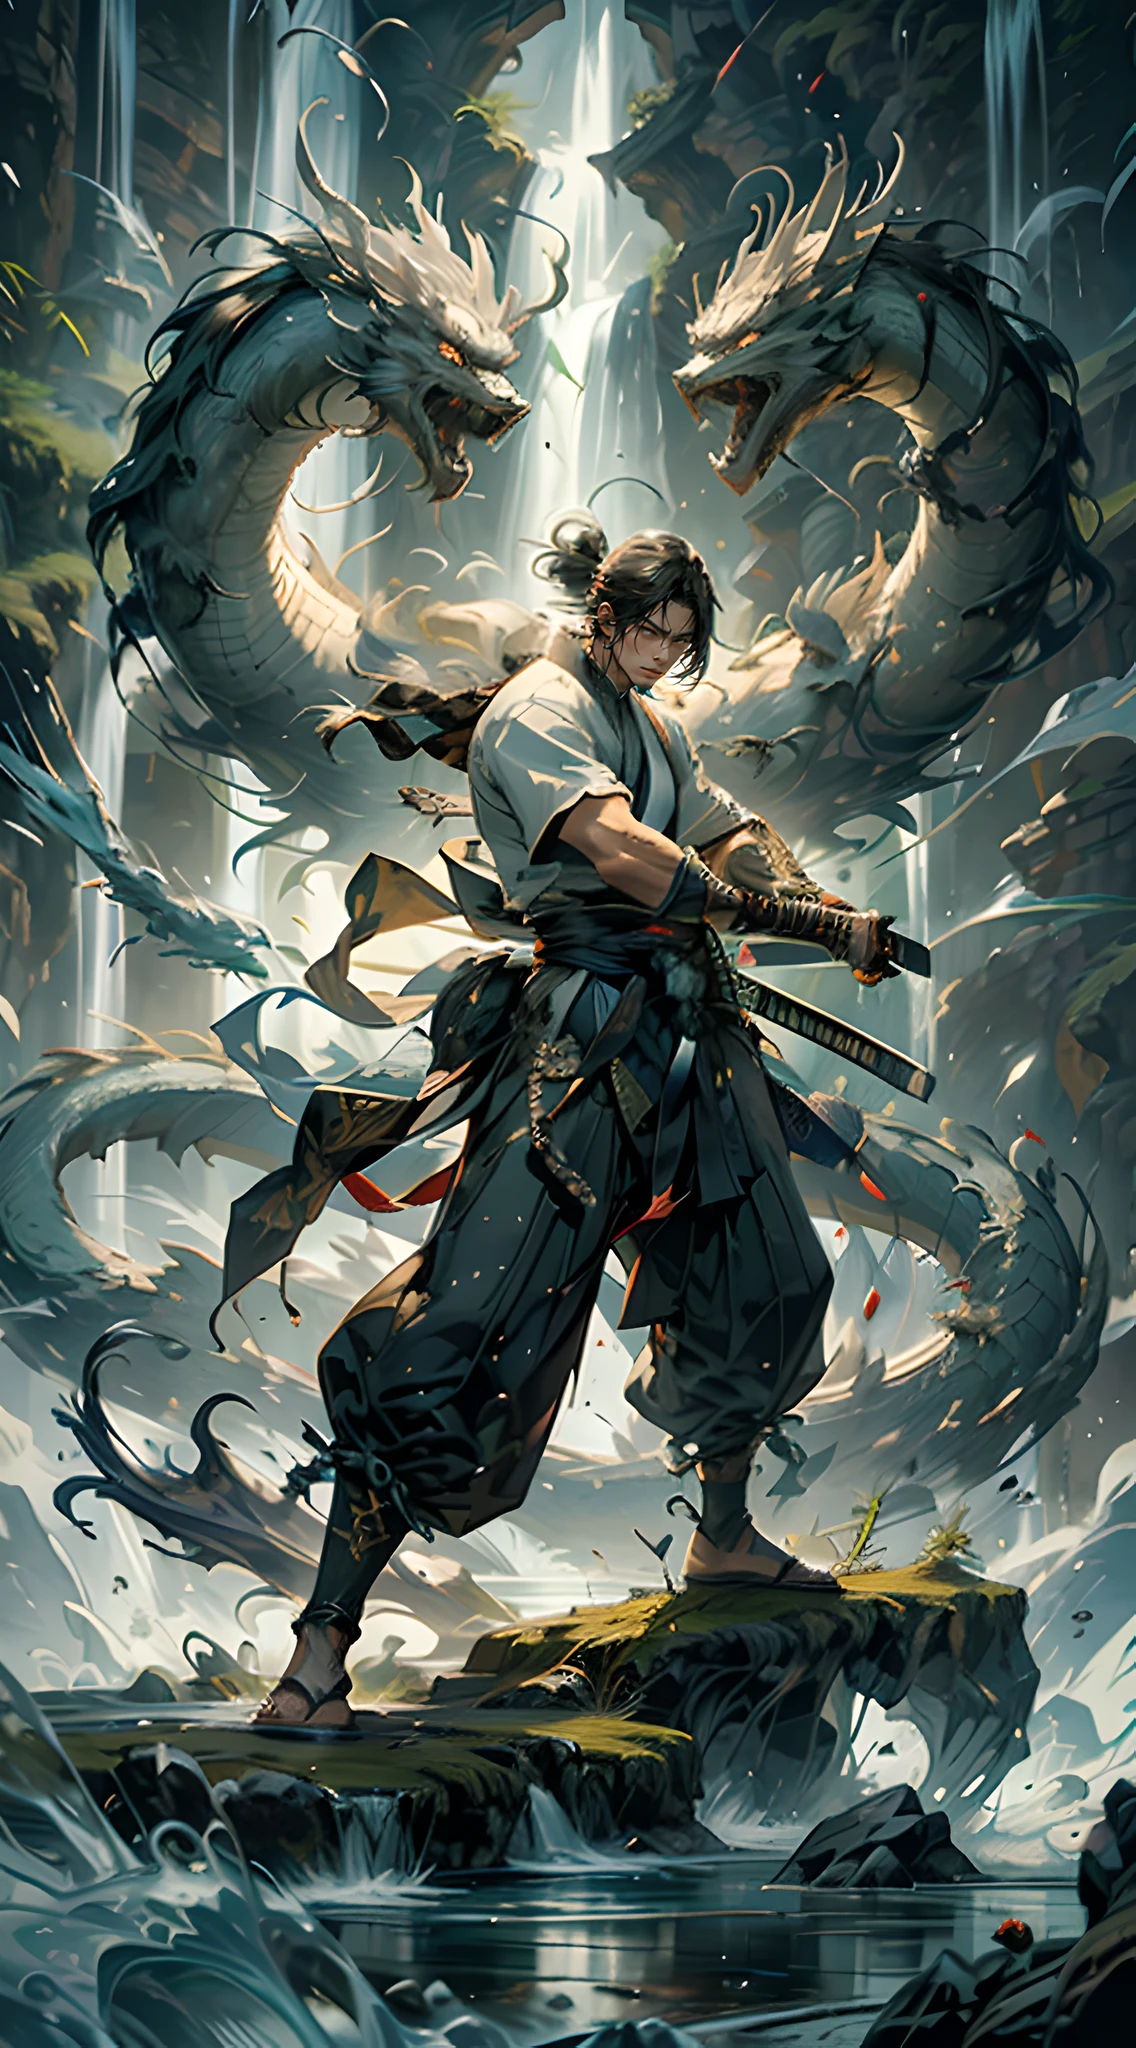 一个男人, 穿著傳統武術服裝, 揮舞劍, 站在巨大的瀑布前, 动作姿势, 白龍之魂圍繞著他